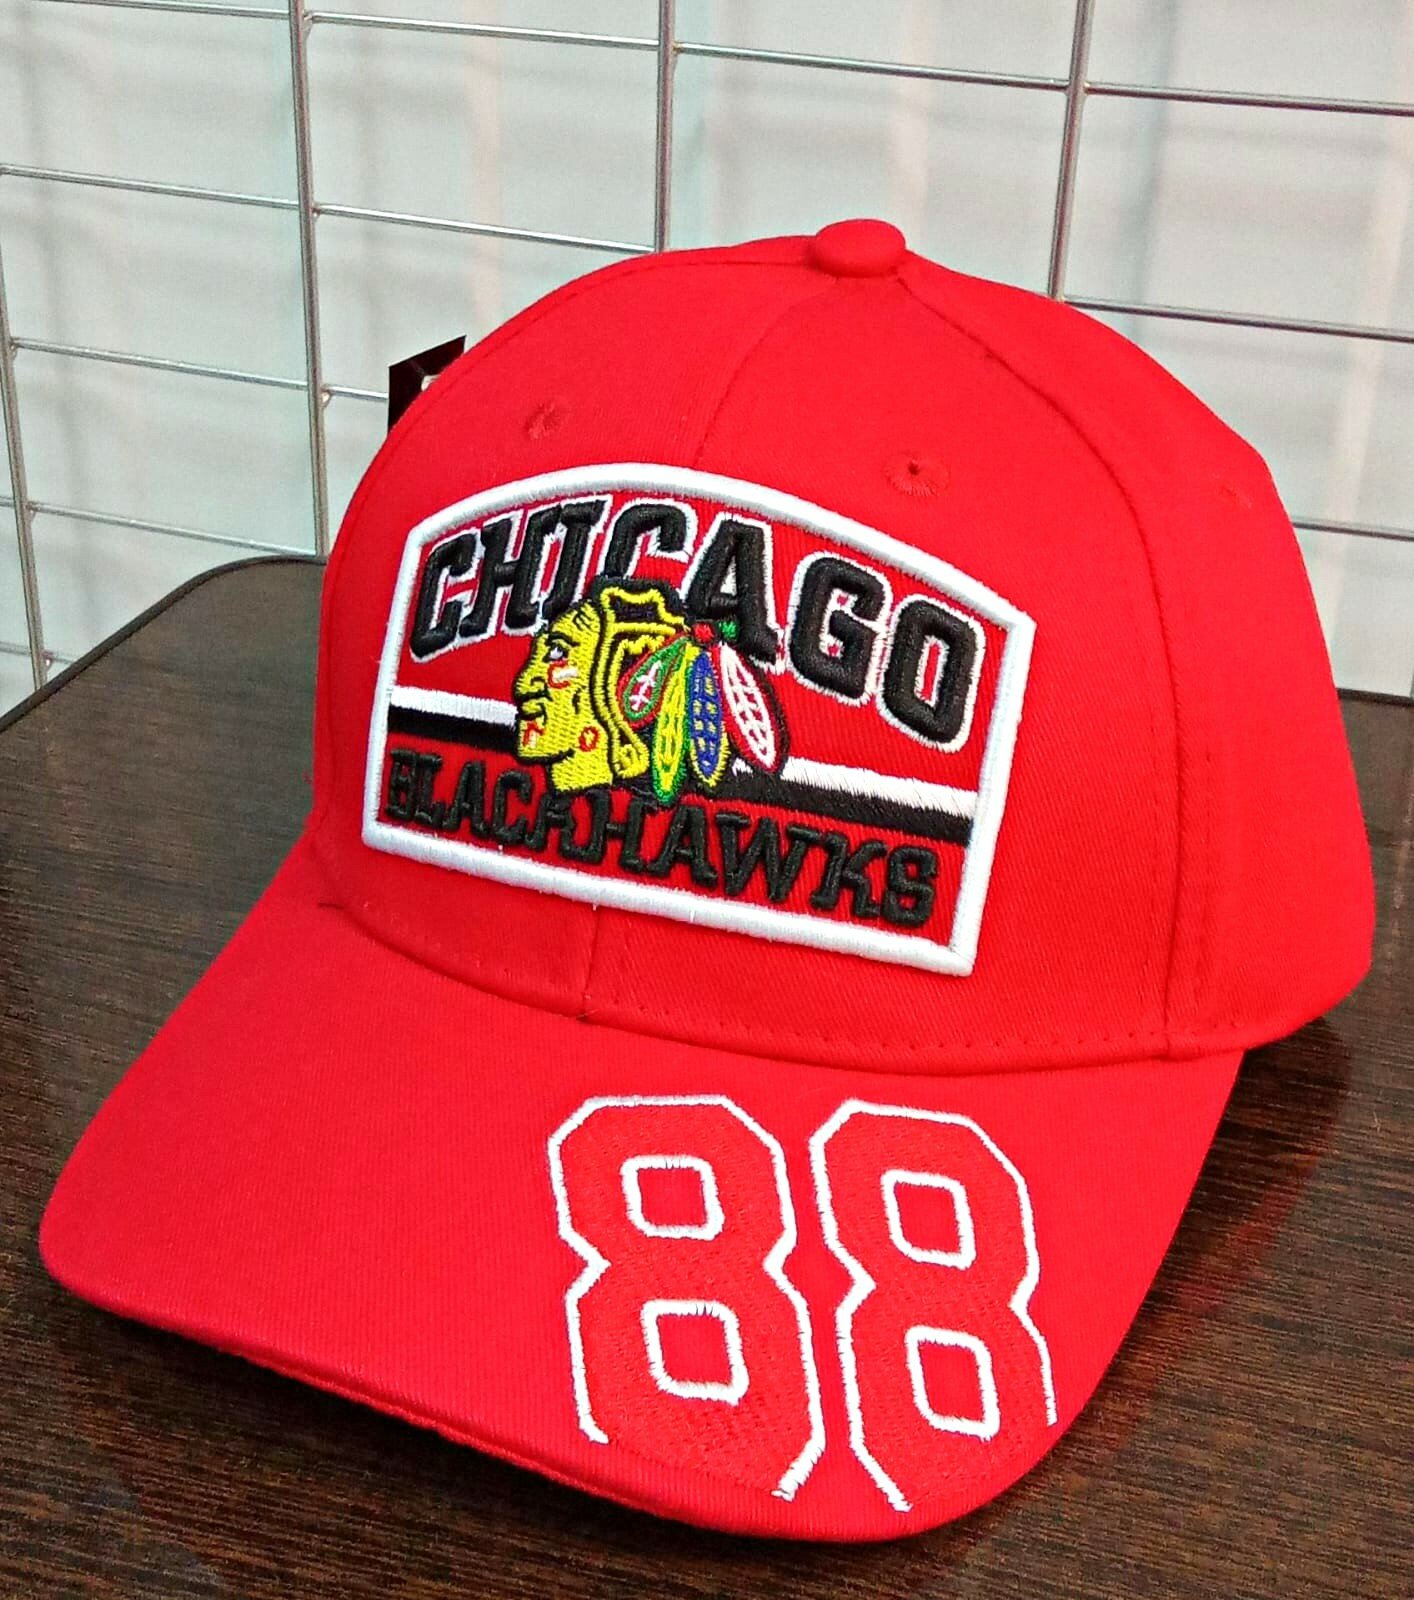 Для хоккея Чикаго кепка хоккейного клуба NHL CHICAGO BLACKHAWKS ( США ) №88 бейсболка летняя Красная с регулировкой размера